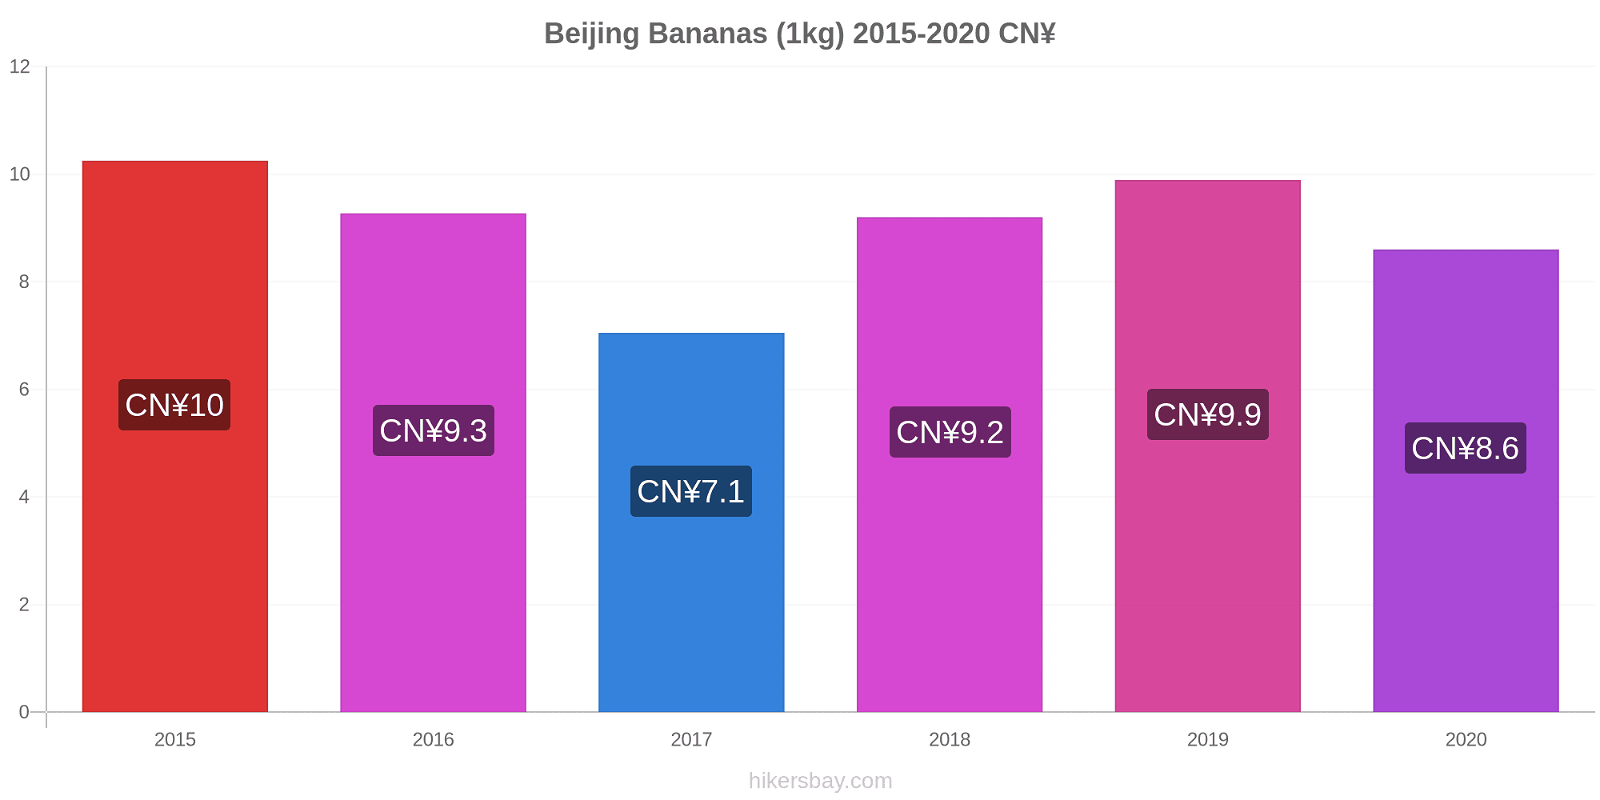 Beijing price changes Bananas (1kg) hikersbay.com